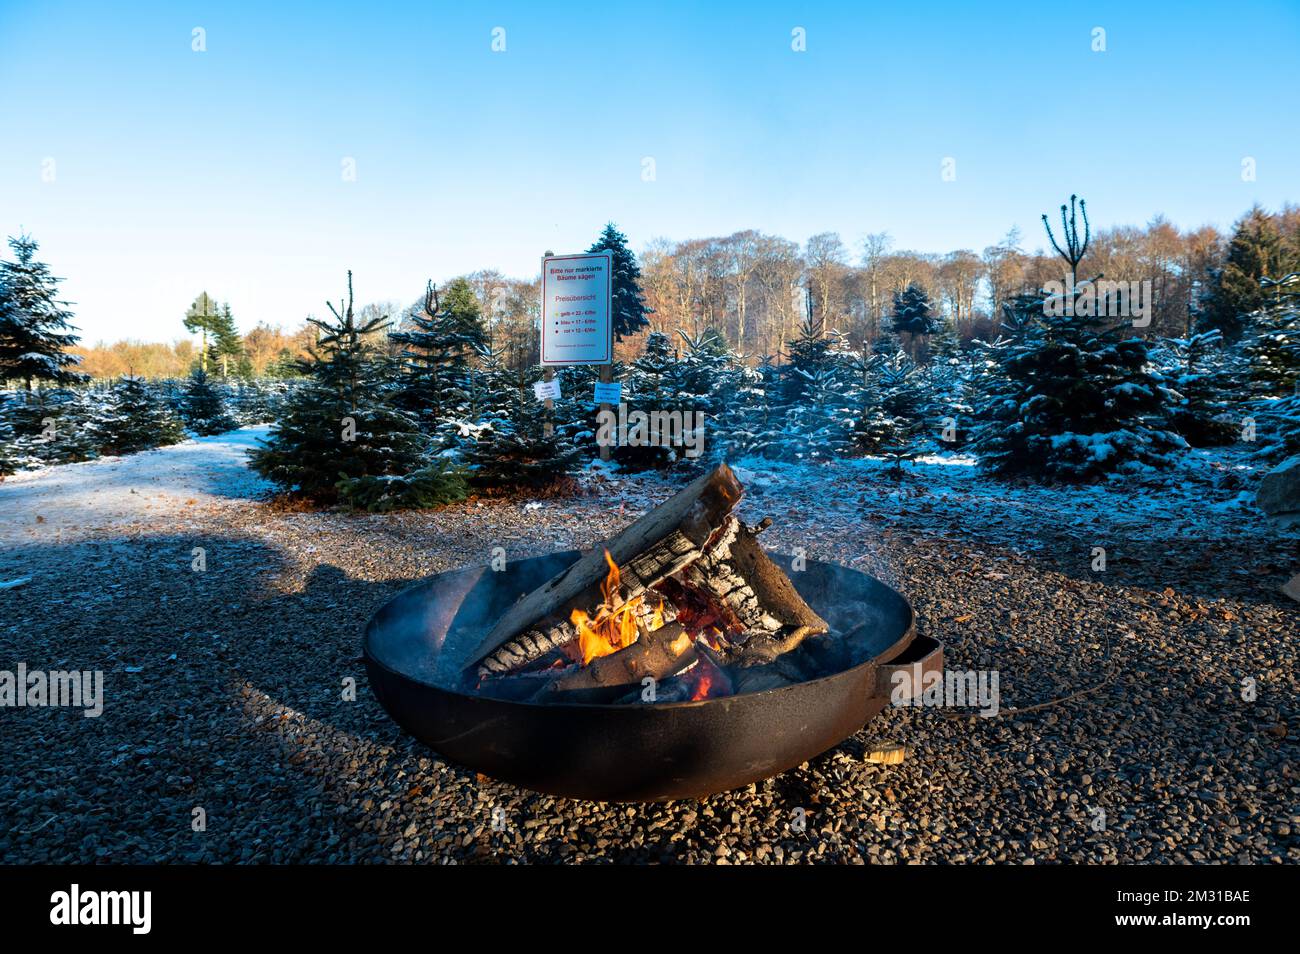 Feuerstelle zum Aufwärmen für wartenden Käufer eines Weihnachtsbaumes Foto Stock